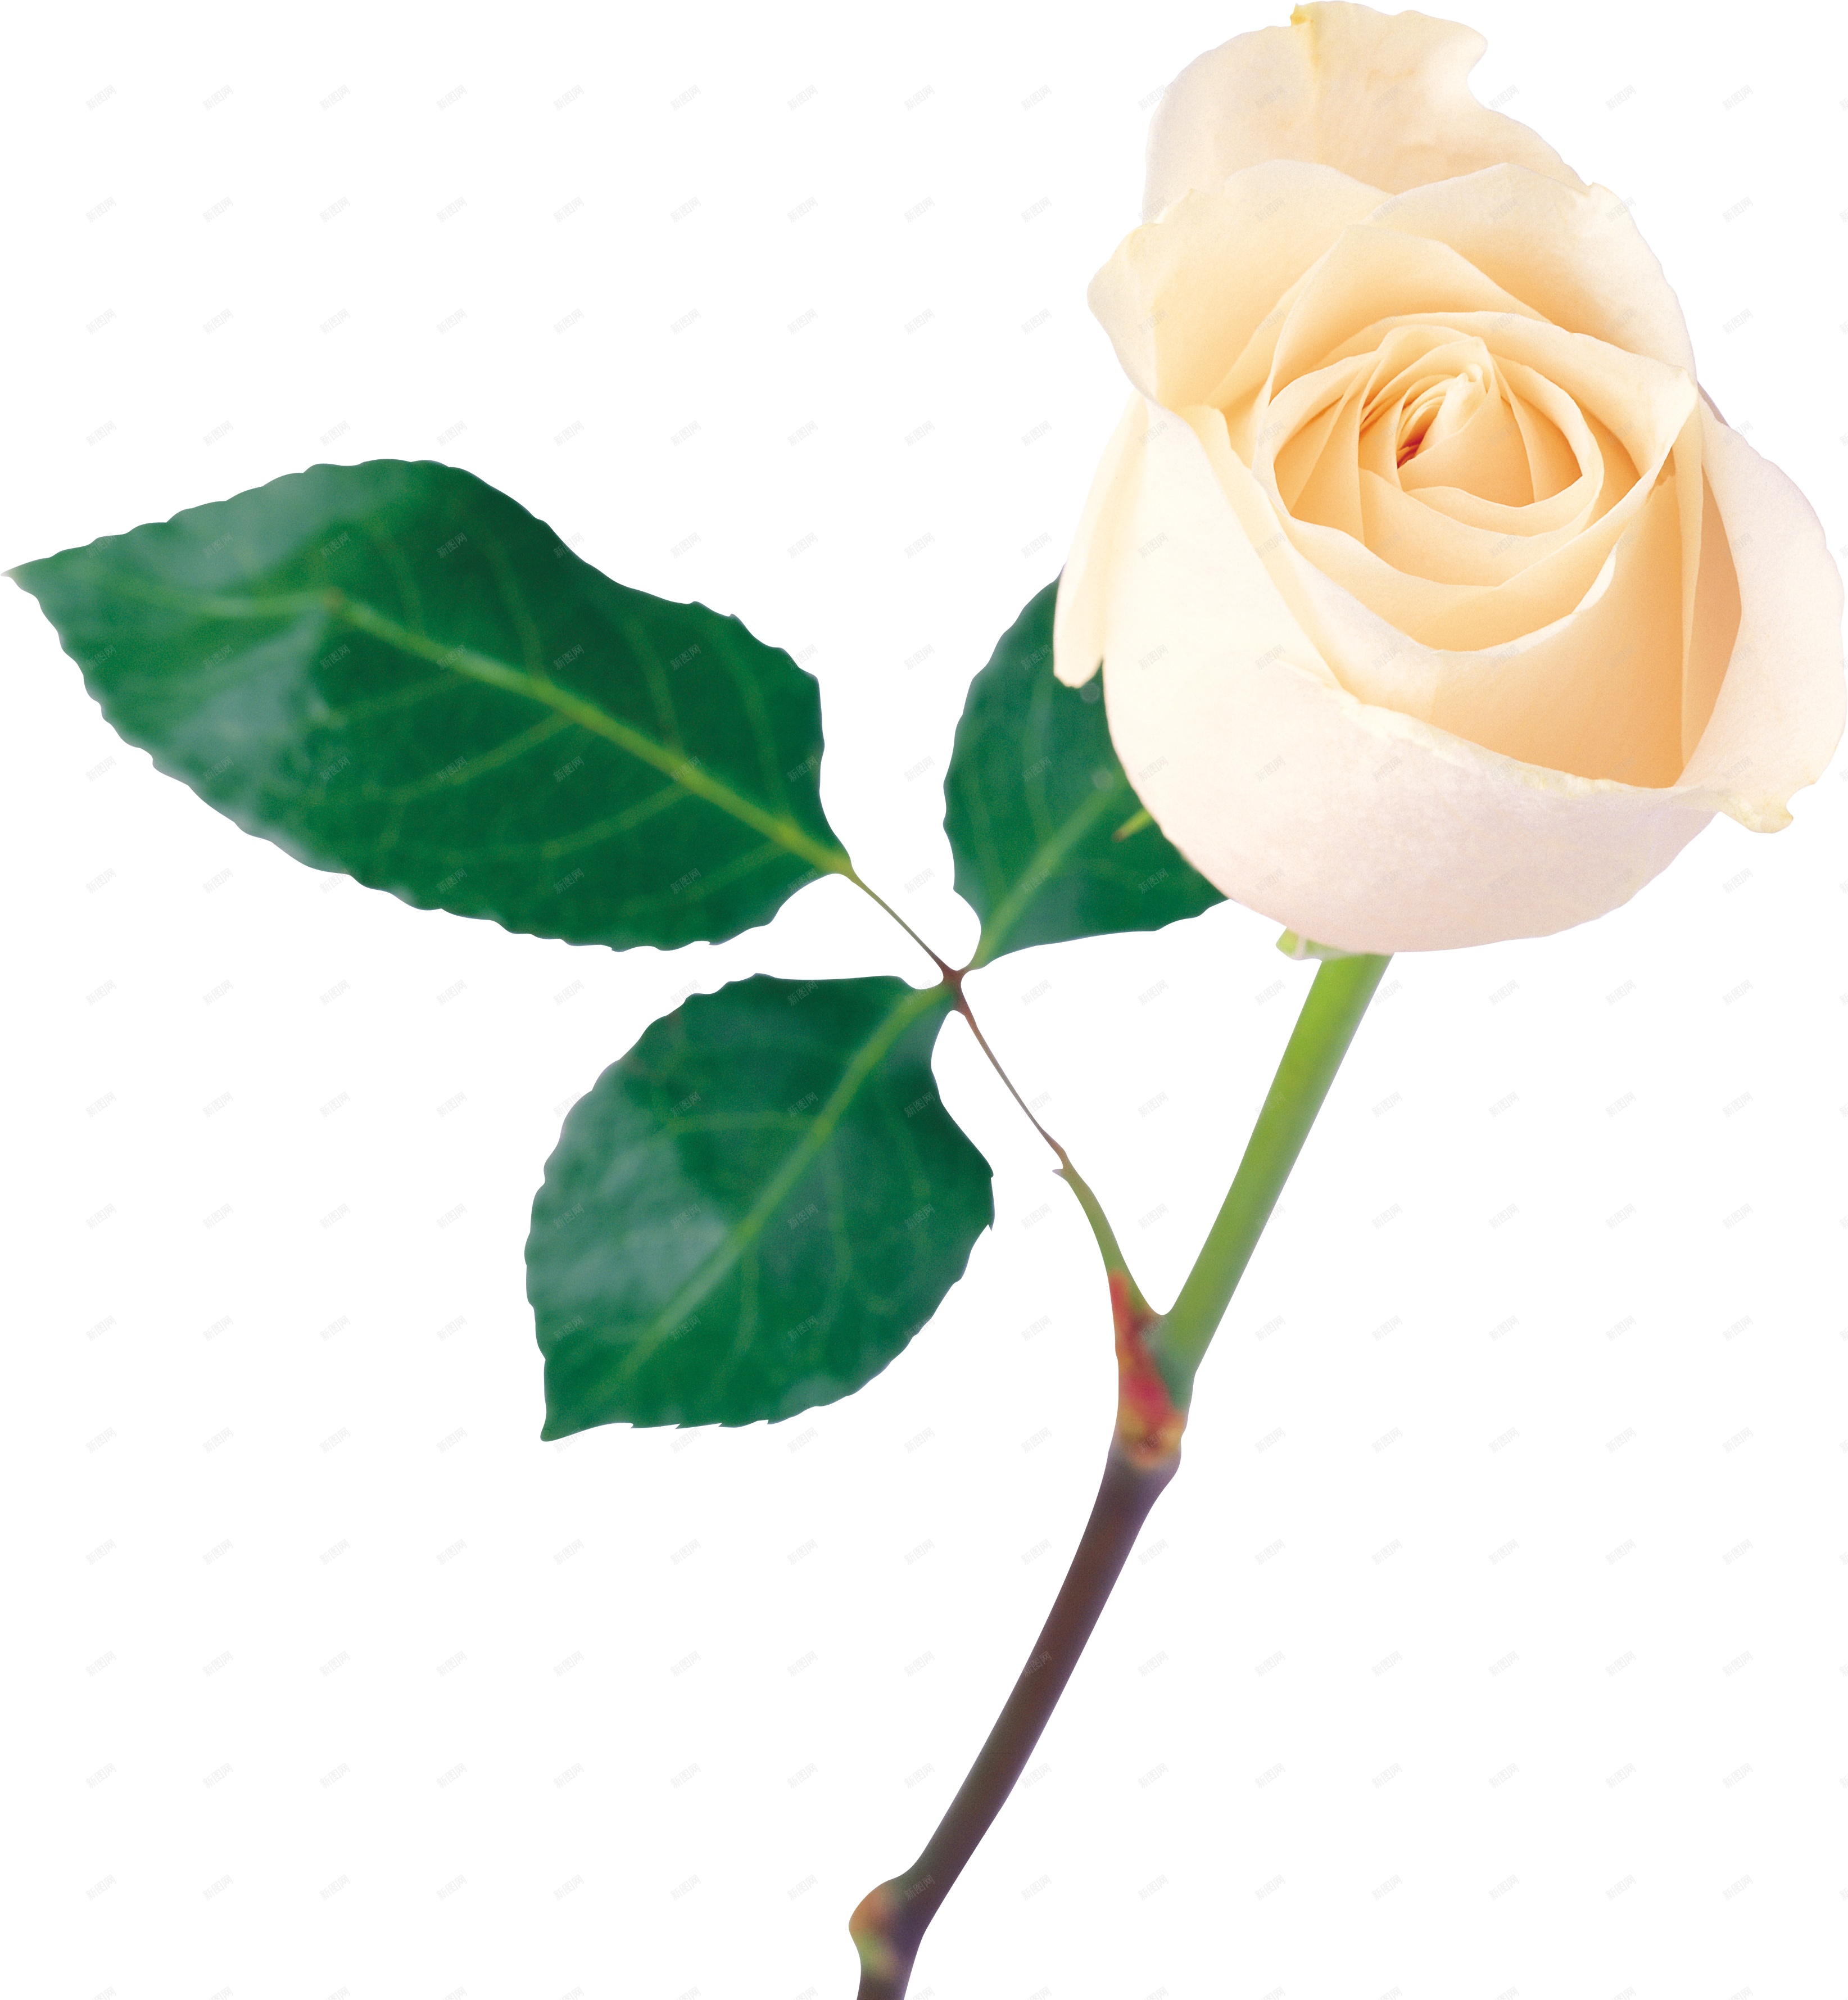 白玫瑰图片_白玫瑰的花朵图片大全 - 花卉网